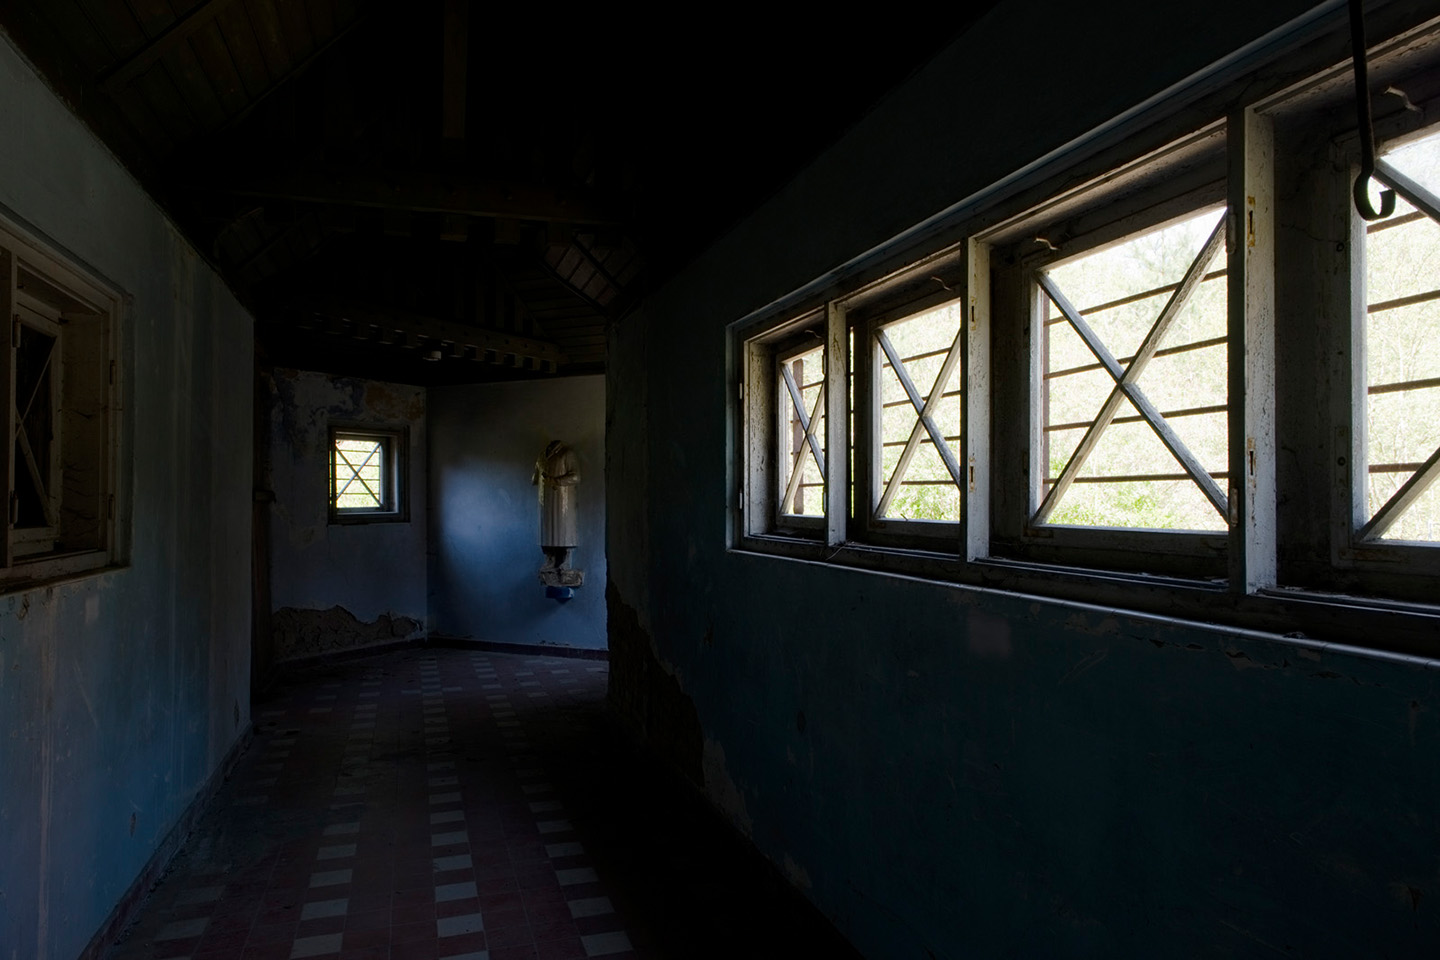 Flur in einem verlassenen Gebäude mit Fenstern am rechten Bildrand